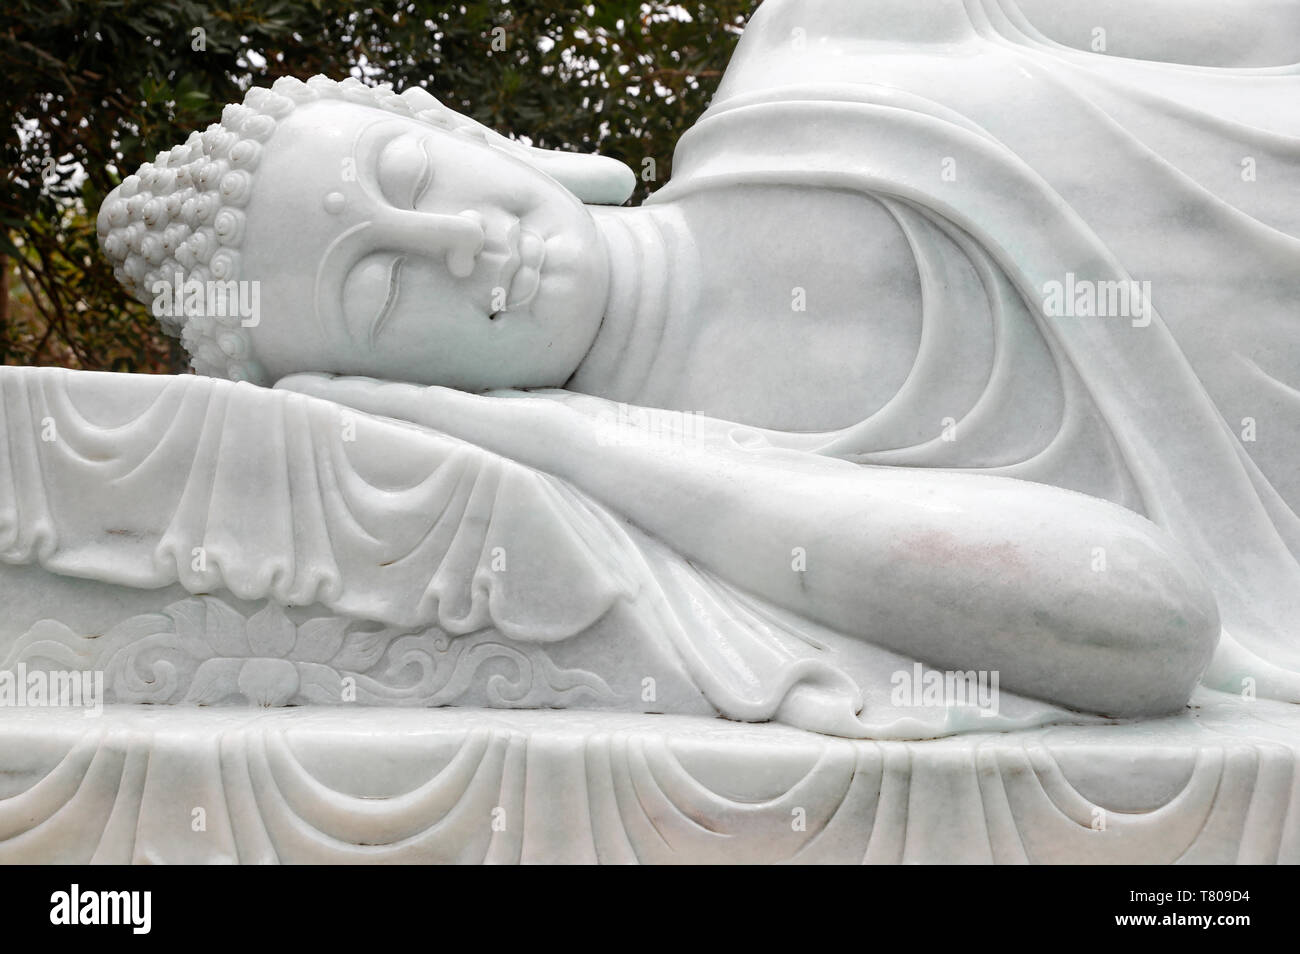 Truc Lam Phuong Nam templo budista, la estatua de la final el Nirvana, el Buda entró en meditación y luego falleció, Can Tho, Vietnam Foto de stock